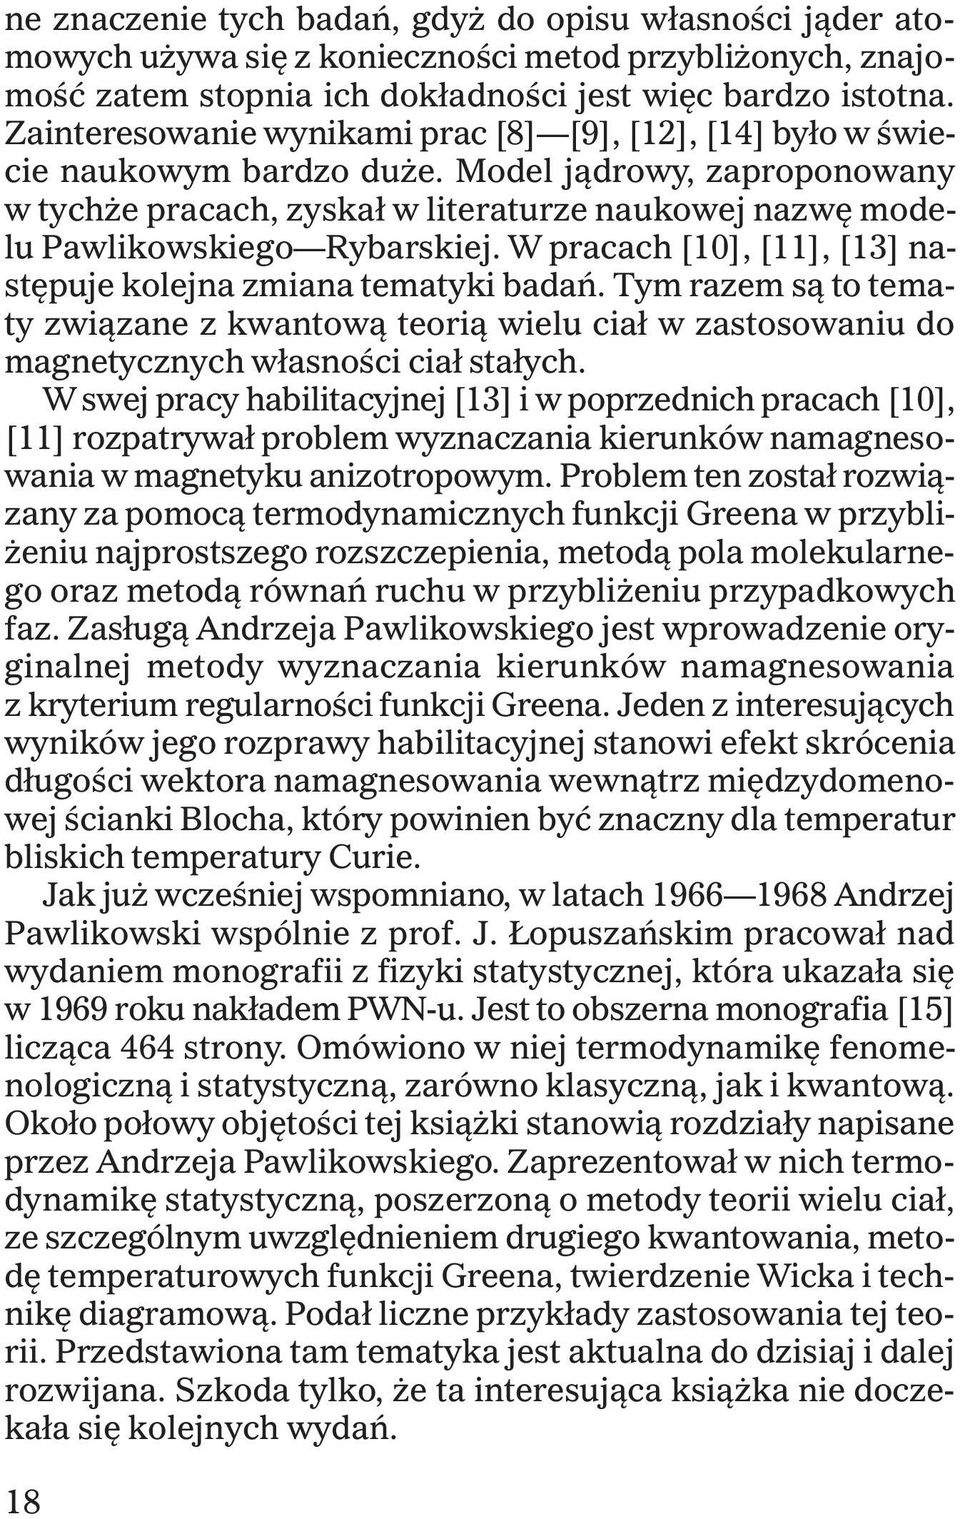 Model j¹drowy, zaproponowany w tych e pracach, zyska³ w literaturze naukowej nazwê modelu Pawlikowskiego Rybarskiej. W pracach [10], [11], [13] nastêpuje kolejna zmiana tematyki badañ.